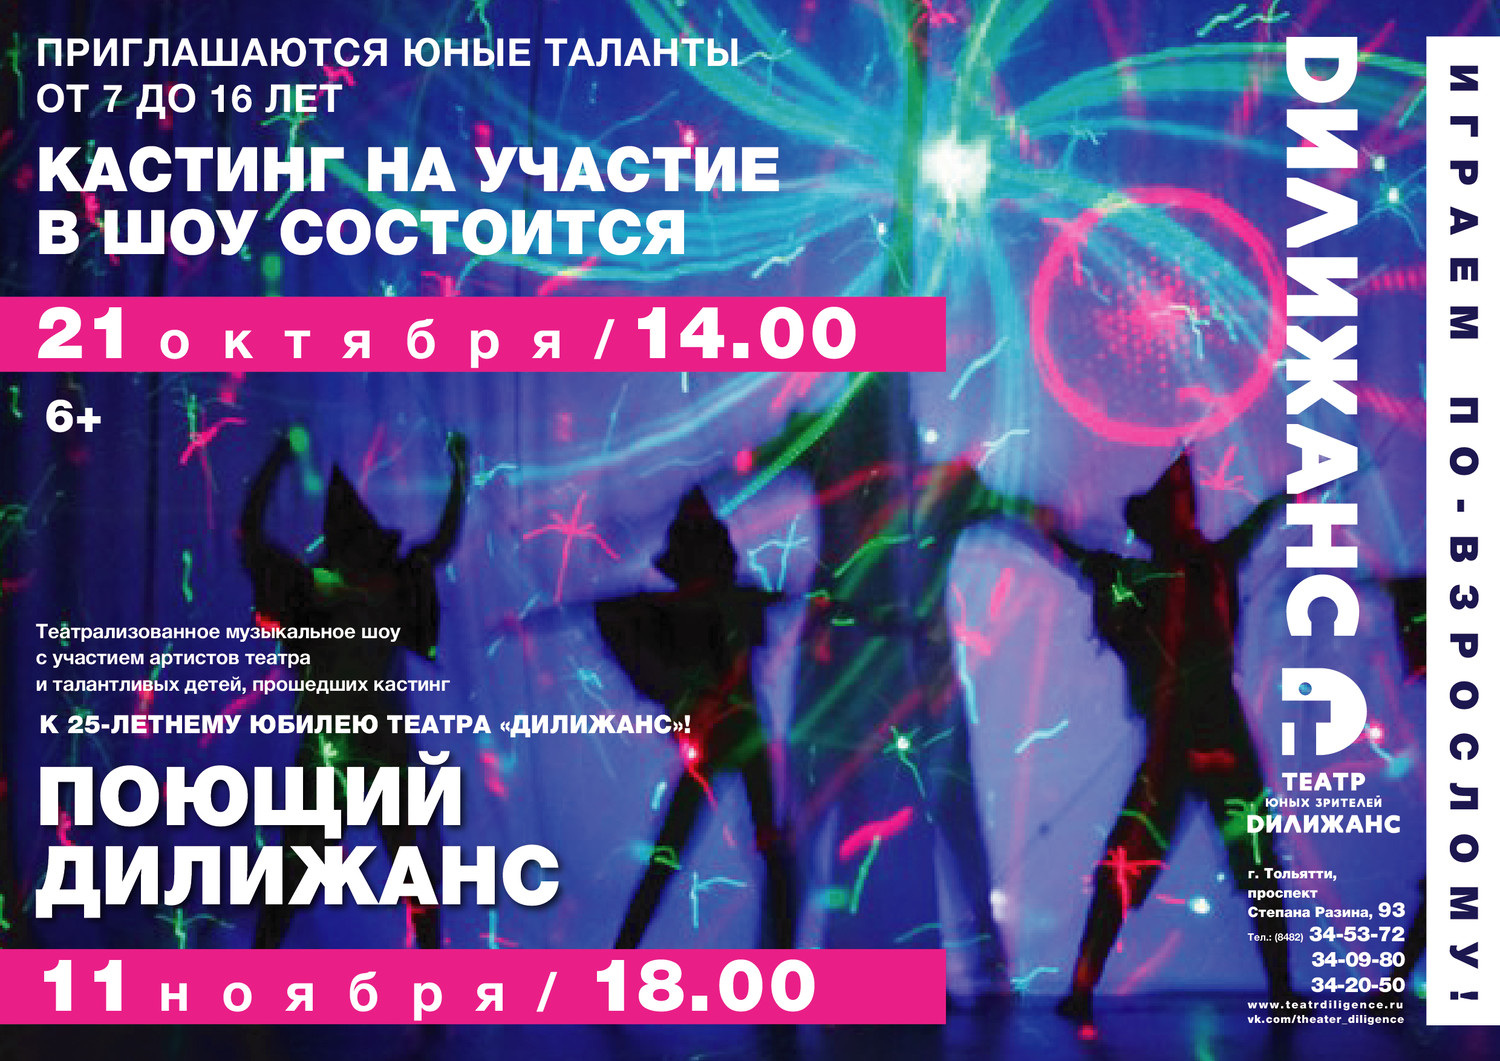 21 октября в 14.00 в театре «Дилижанс» состоится кастинг на участие в театрализованном музыкальном шоу «Поющий Дилижанс»!